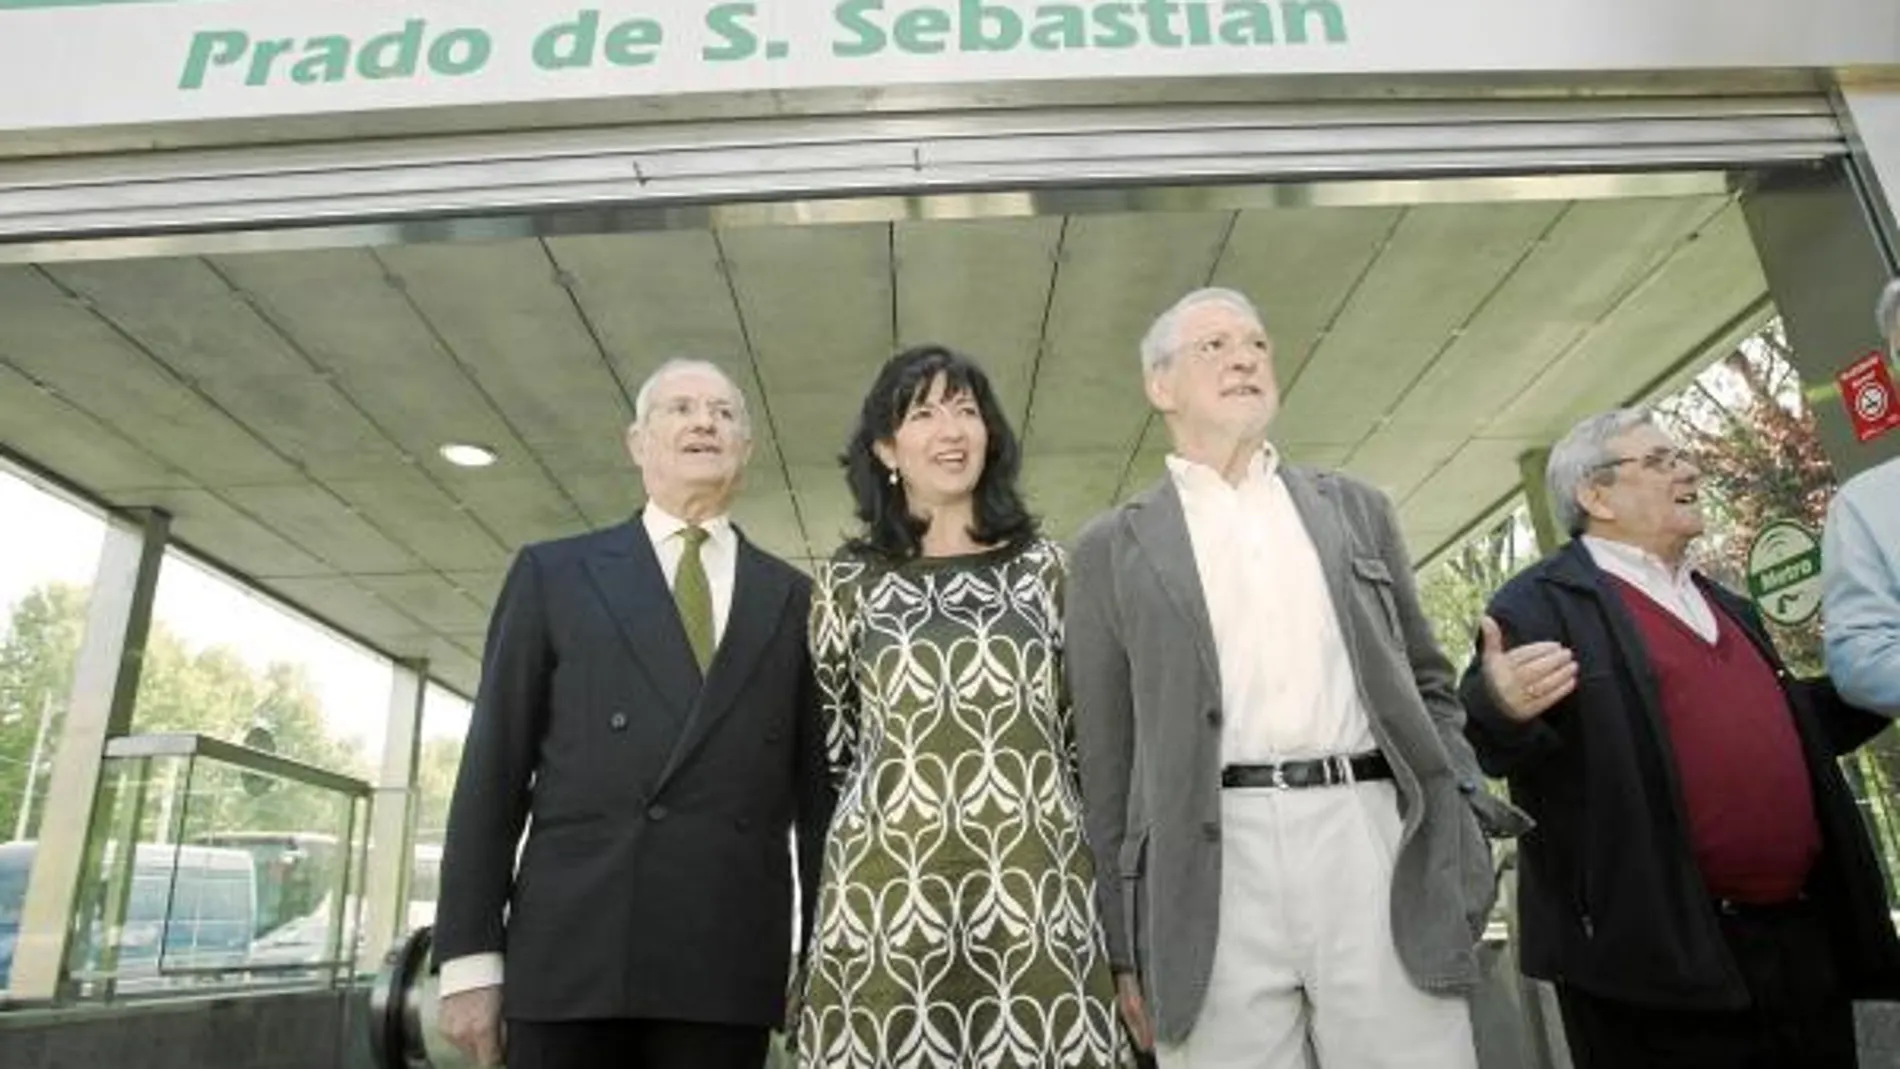 Luis Uruñuela, Pilar González y Alejandro Rojas-Marcos, junto al metro